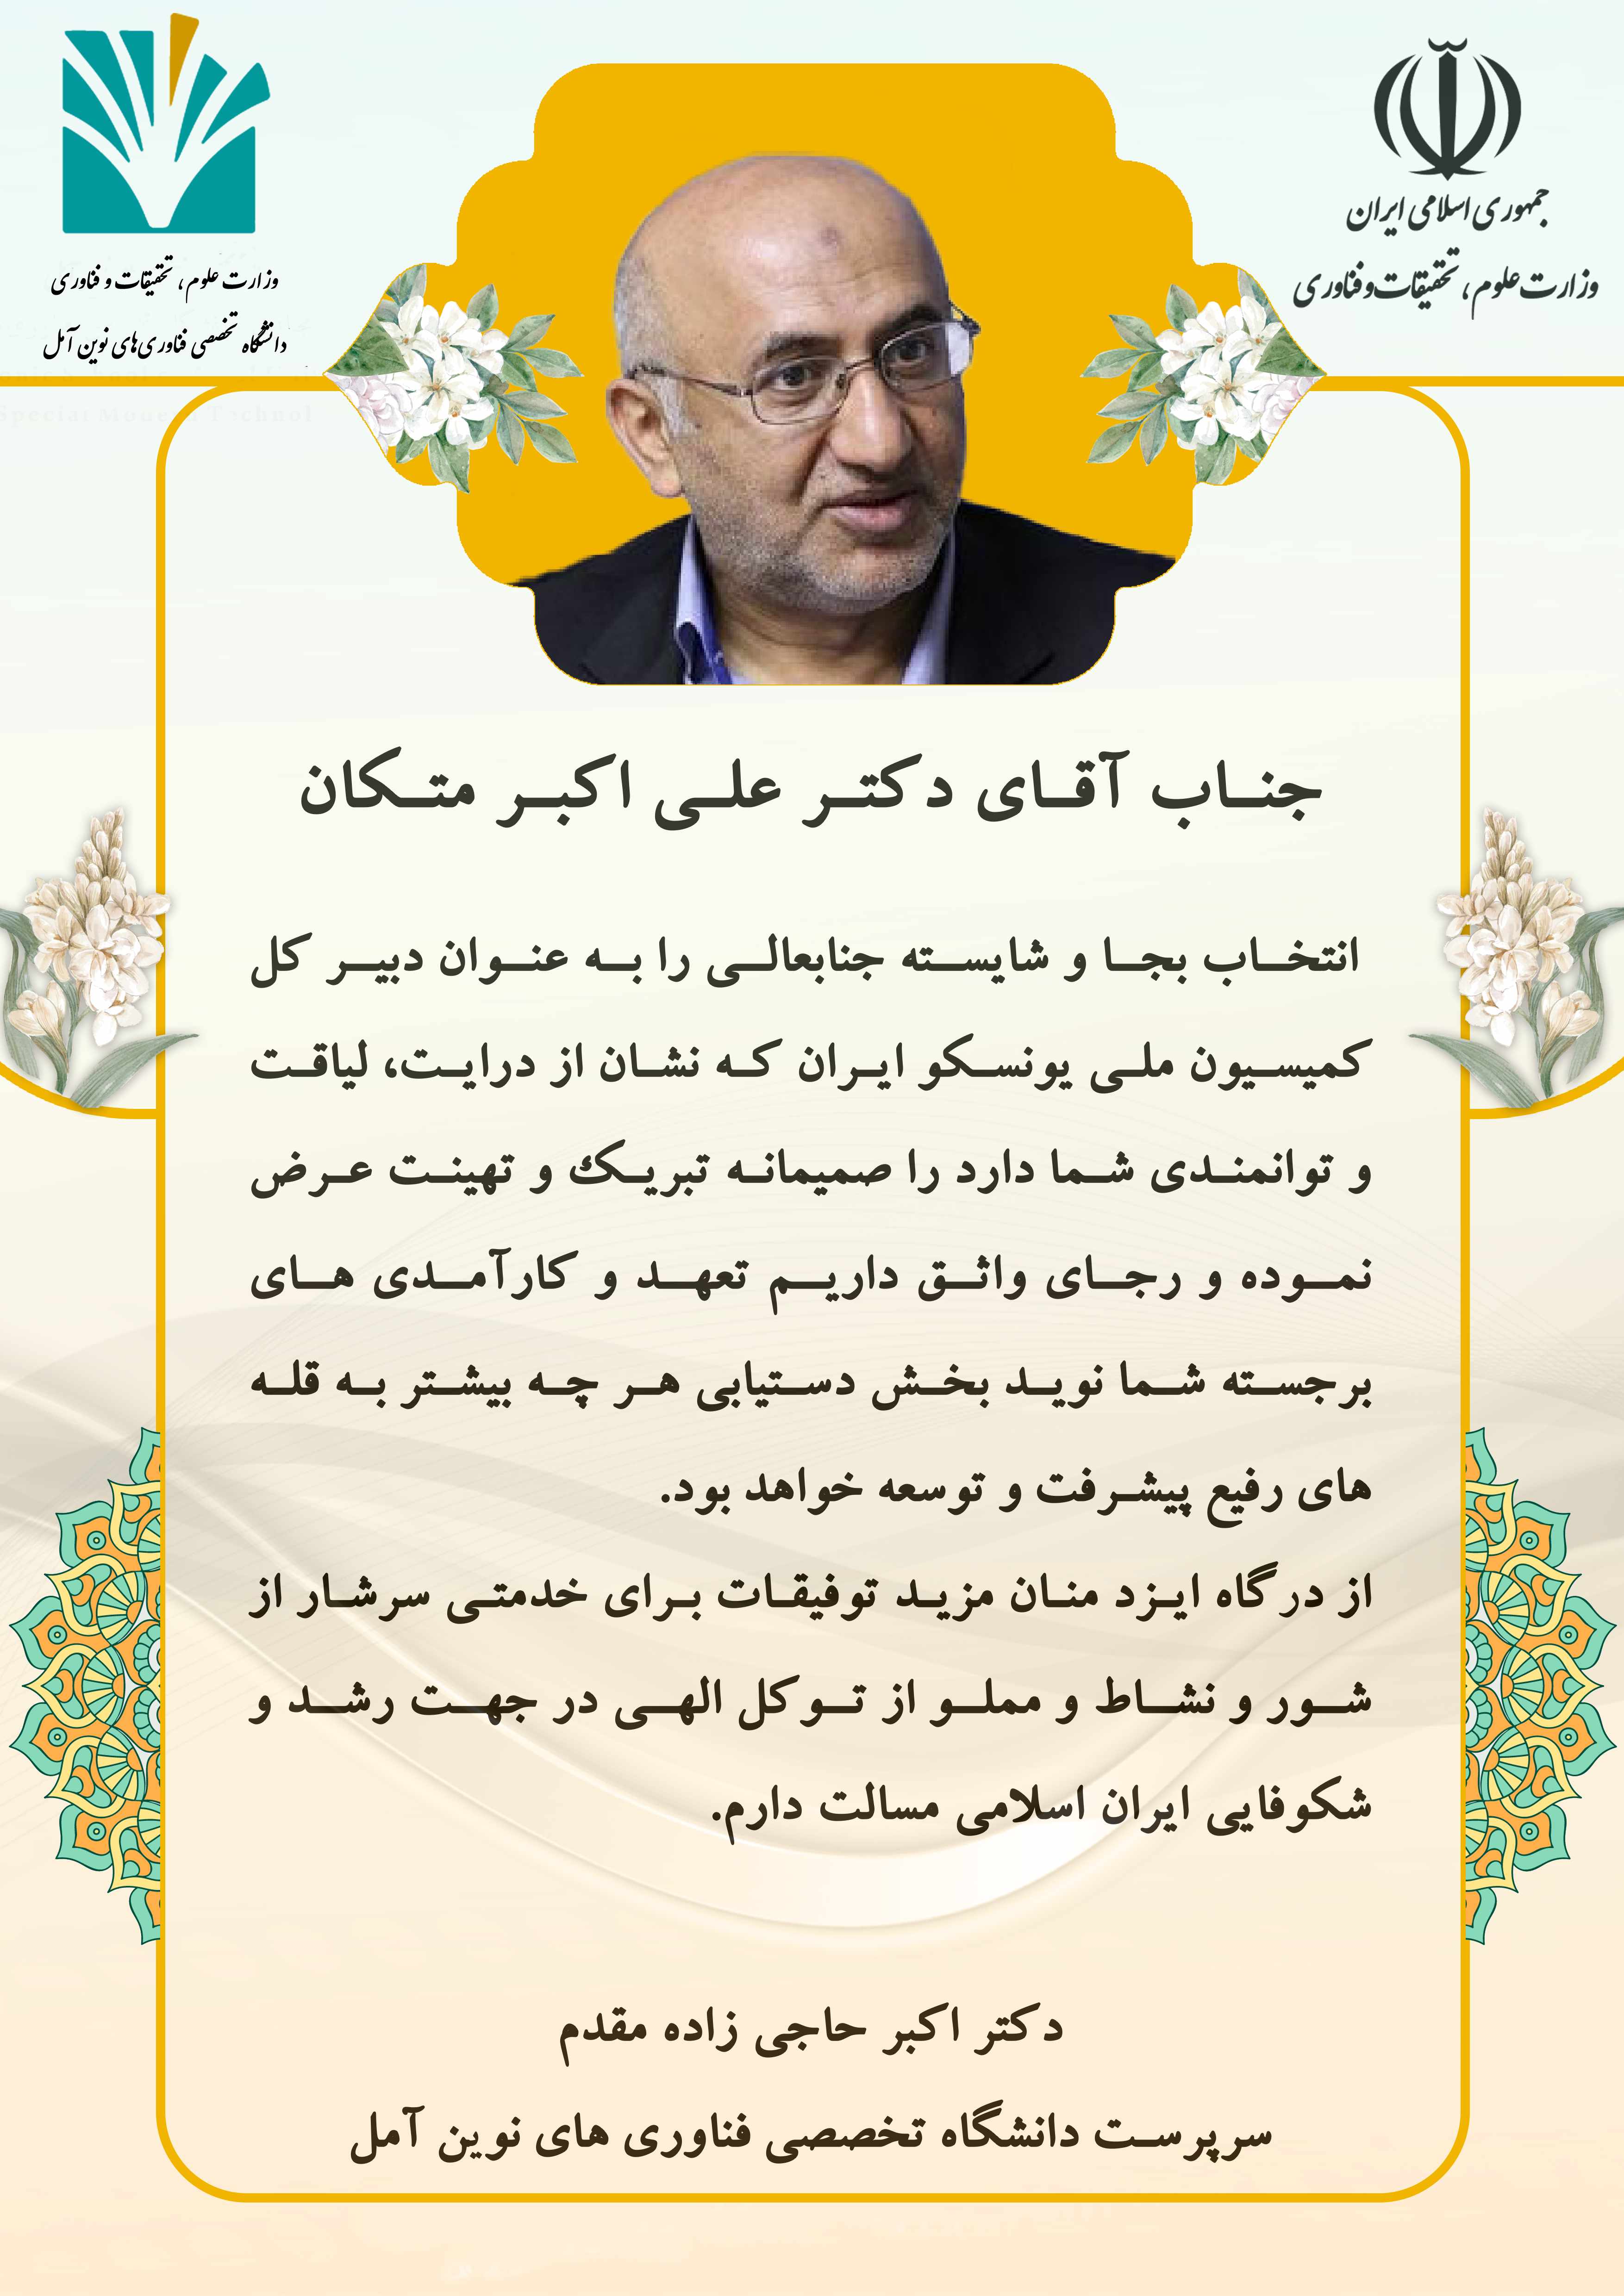 پیام تبریک انتصاب دکتر علی اکبر متکان به عنوان دبیر کل کمیسیون ملی یونسکو ایران